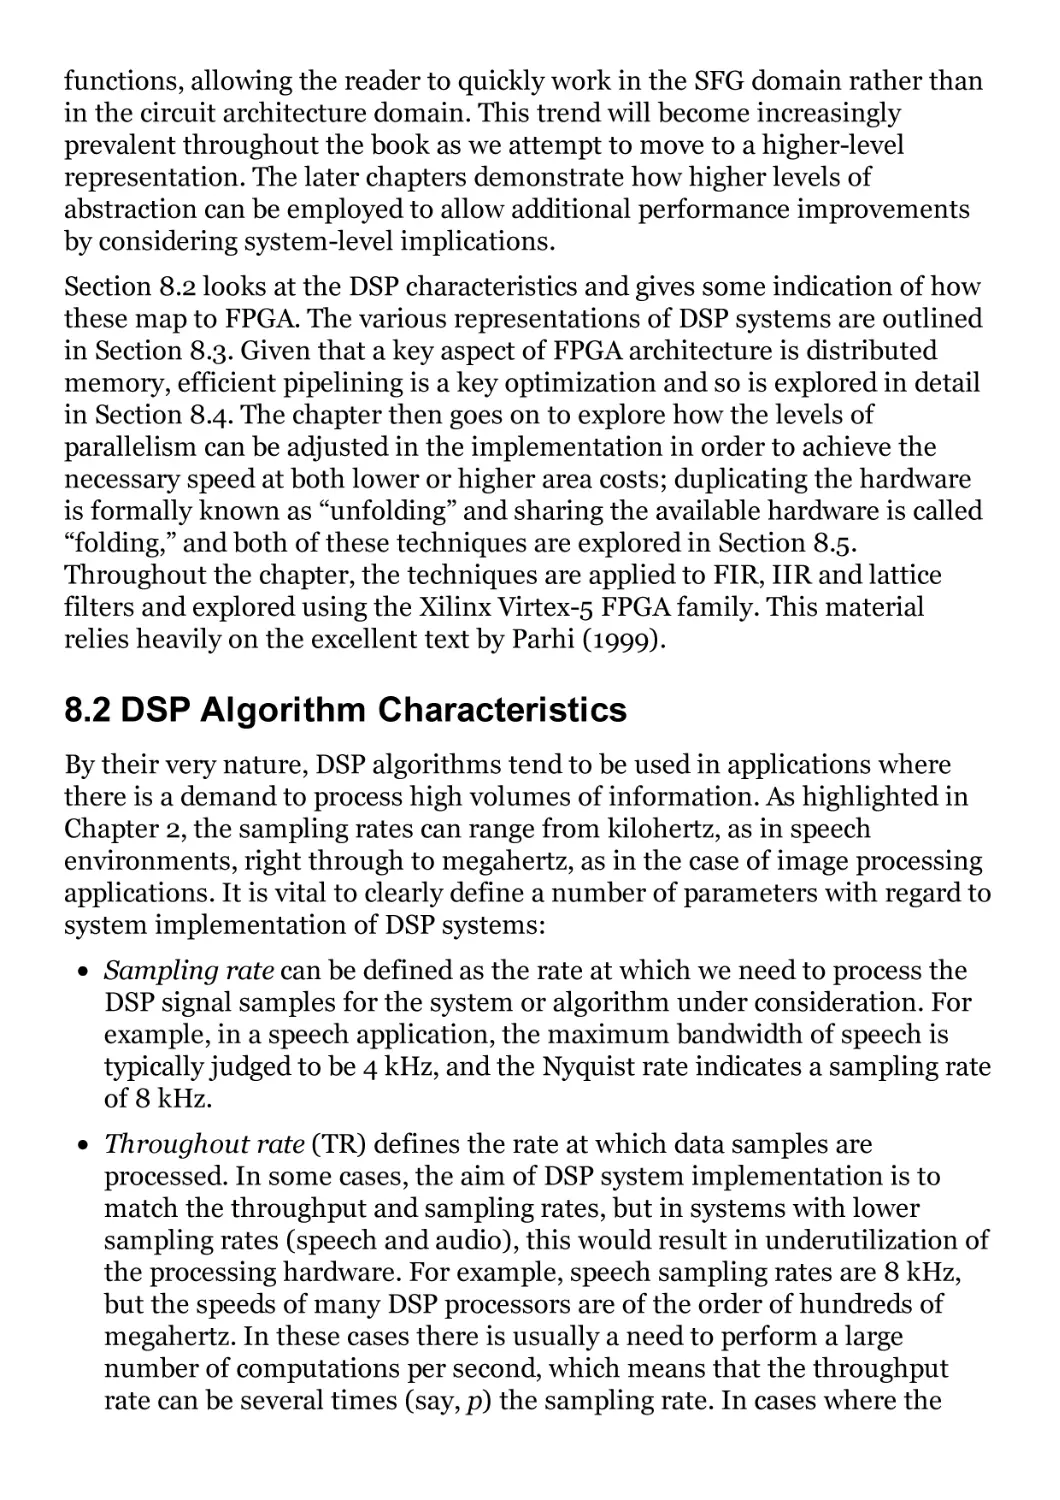 8.2 DSP Algorithm Characteristics